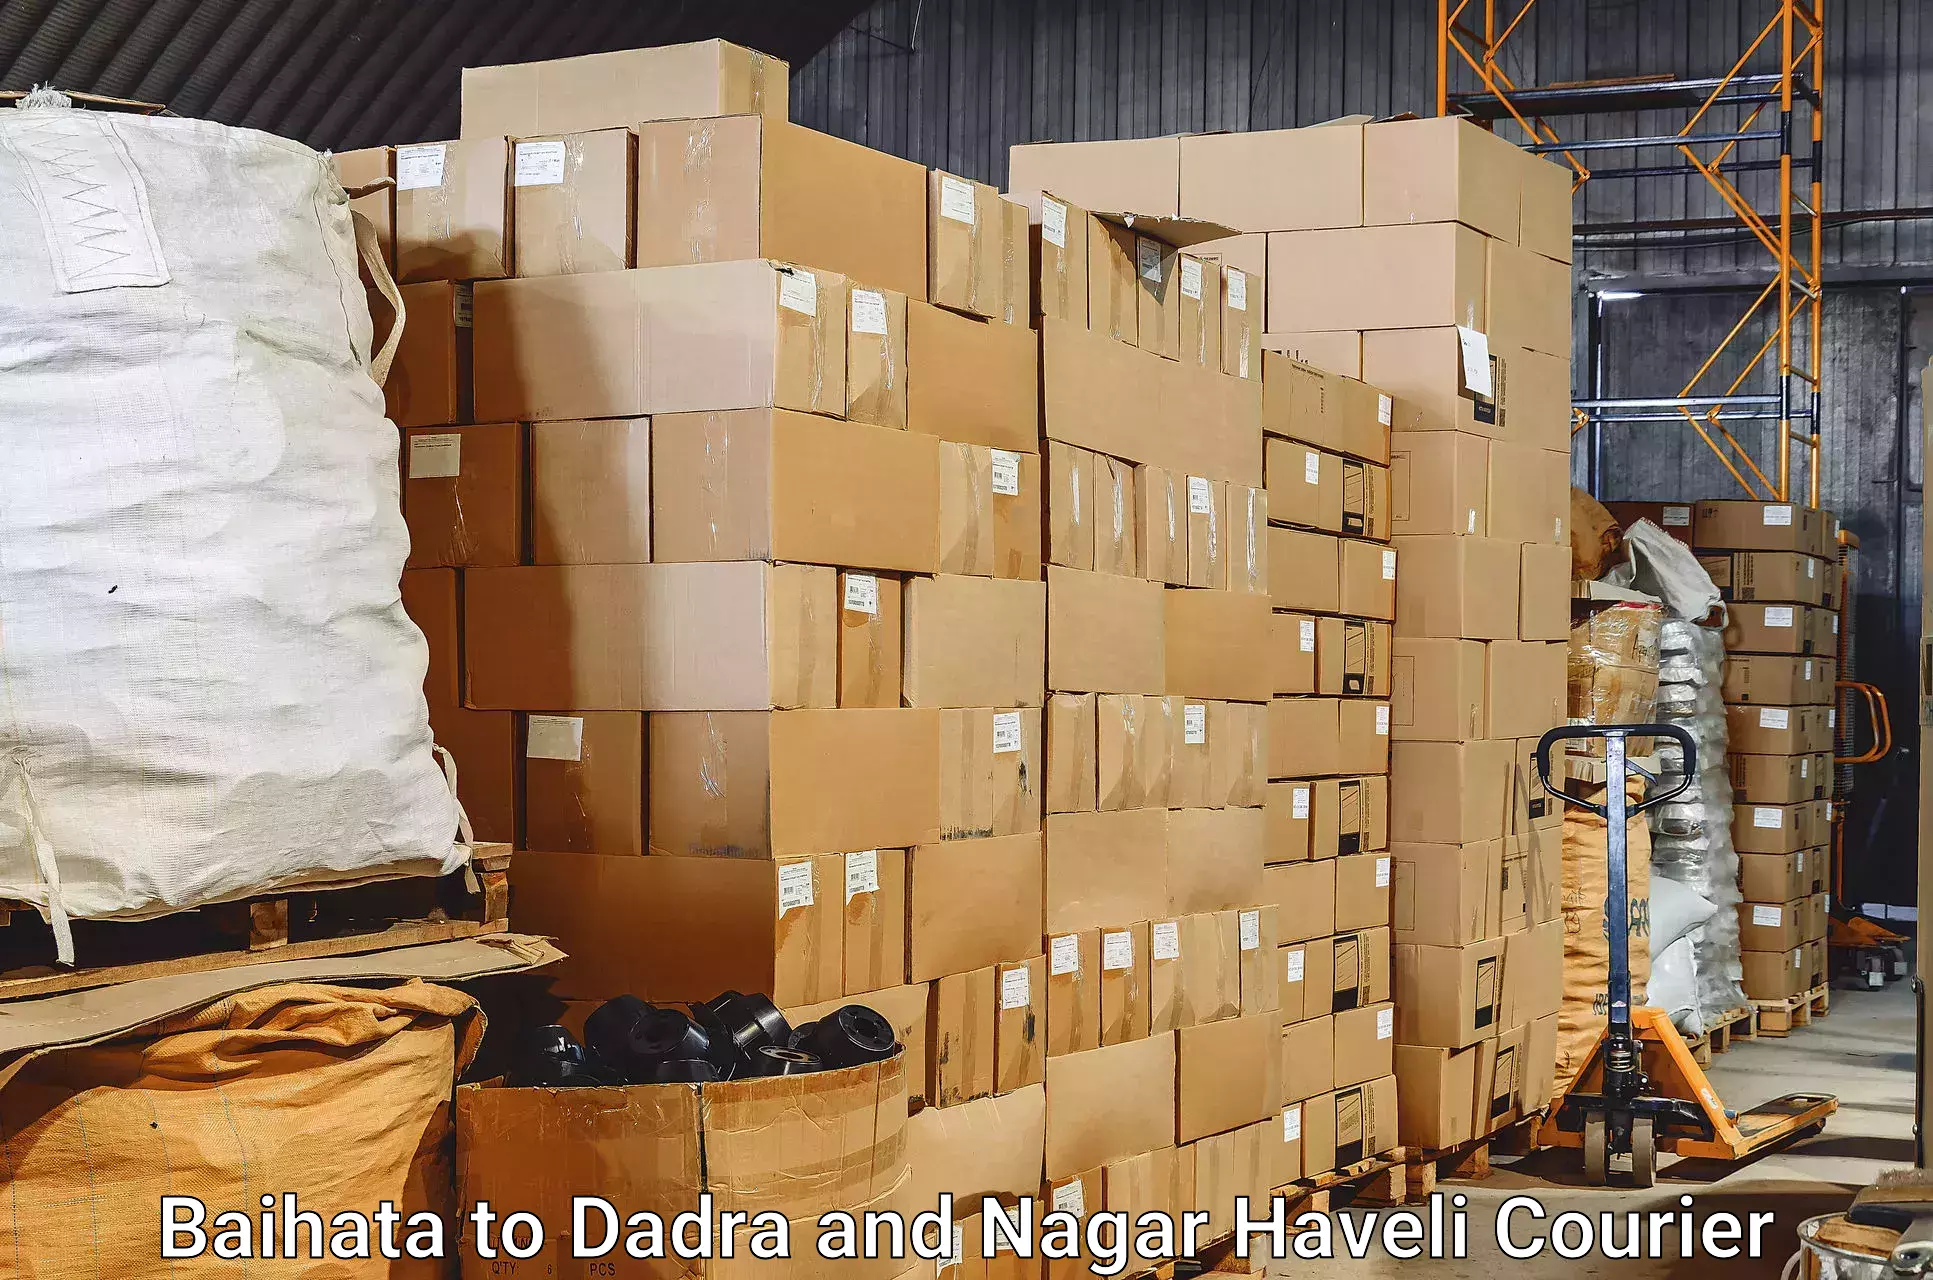 Luggage shipment processing Baihata to Dadra and Nagar Haveli